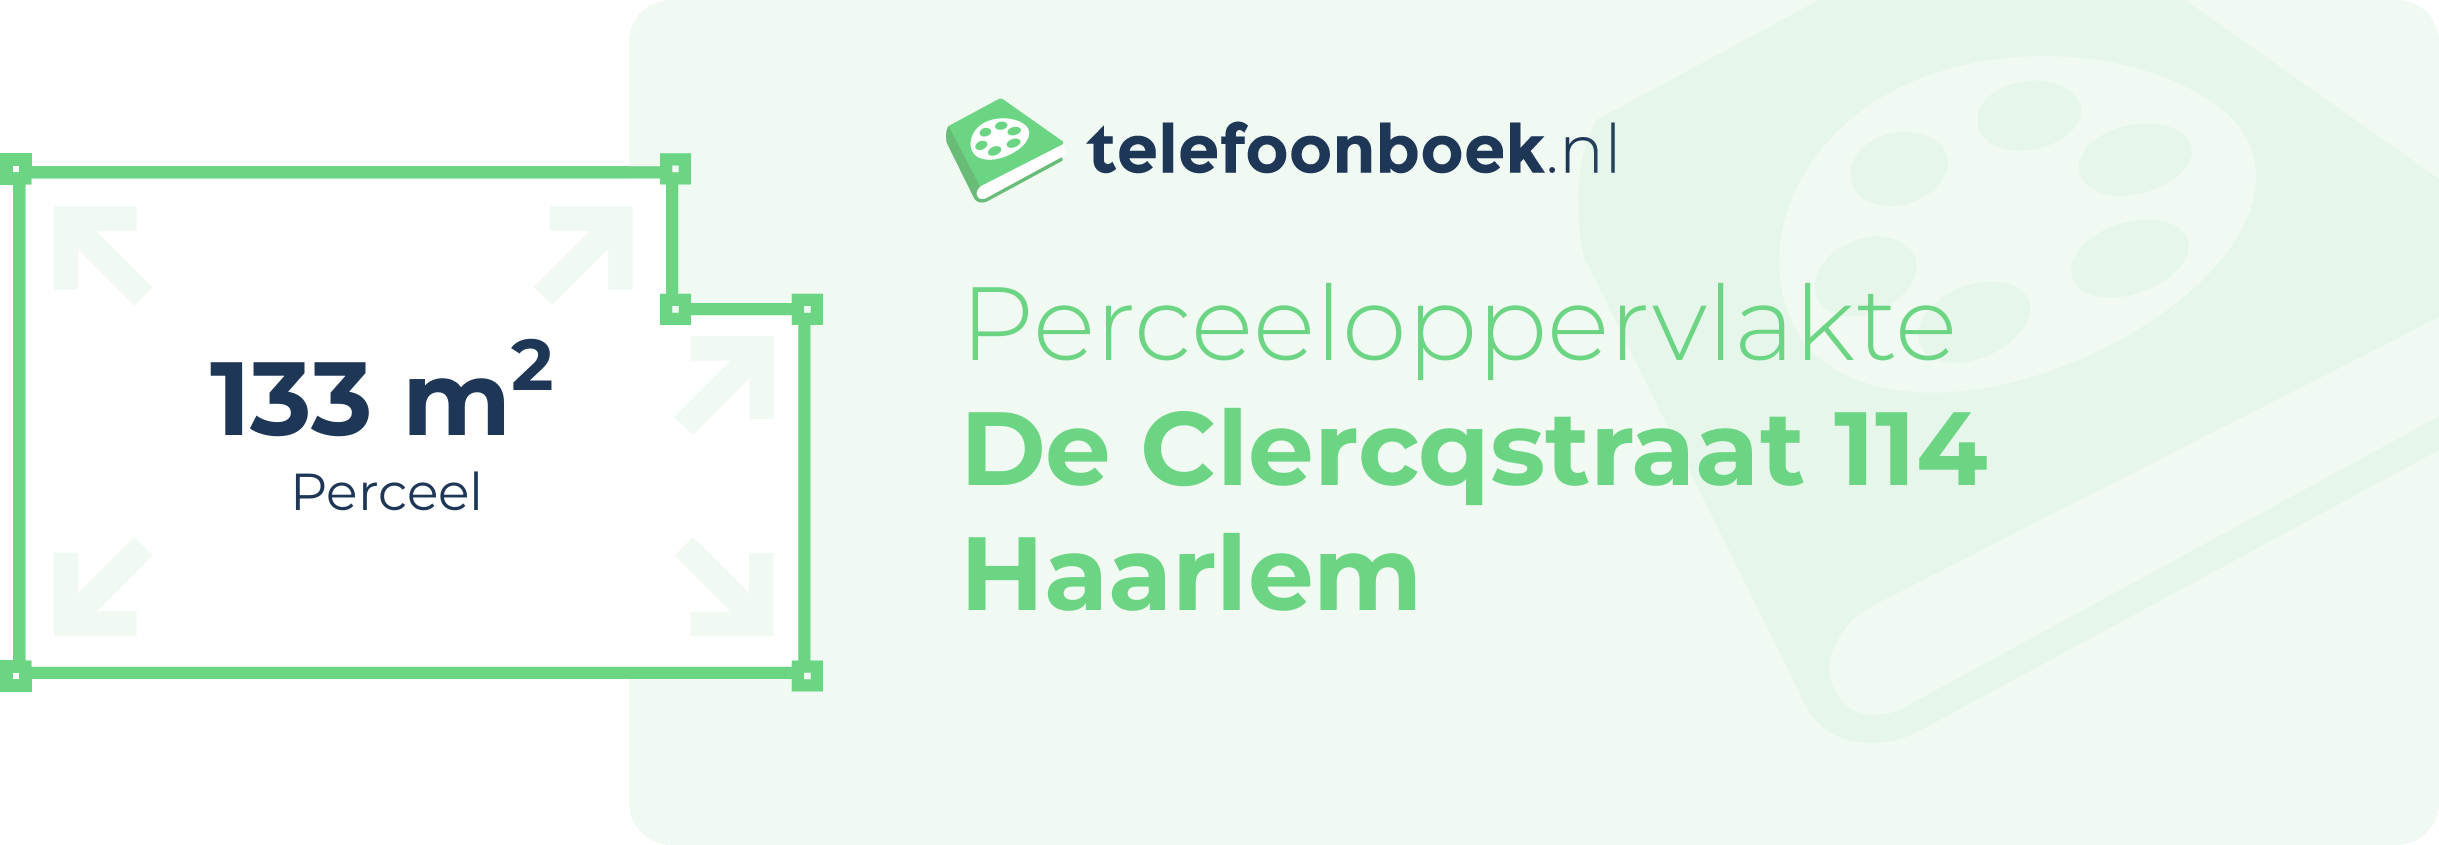 Perceeloppervlakte De Clercqstraat 114 Haarlem